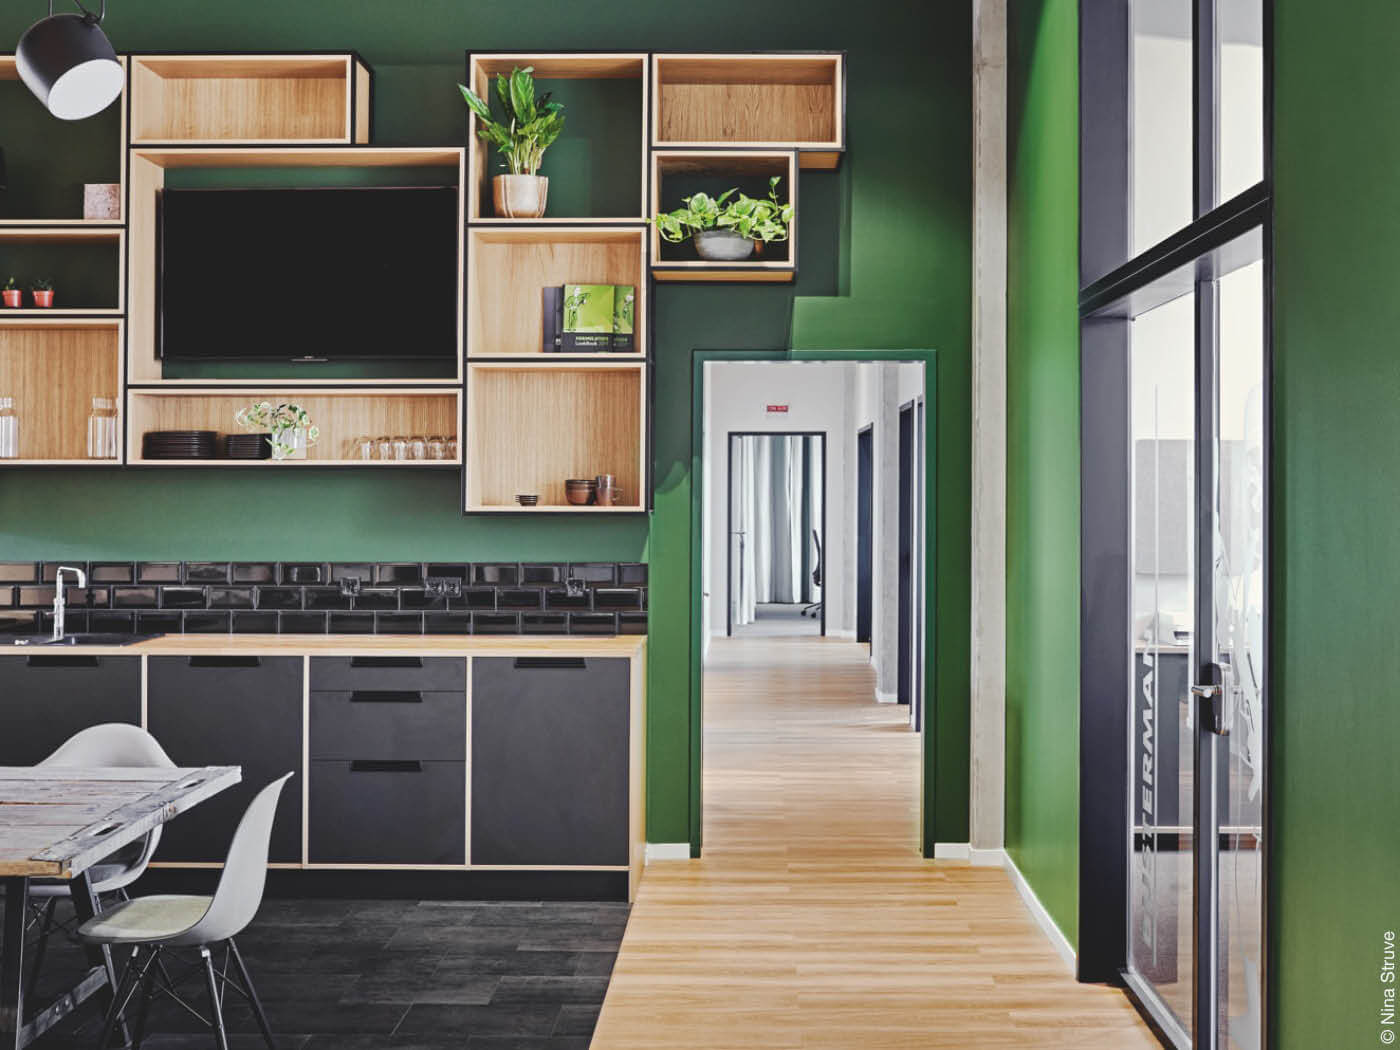 Küche mit grünen Wänden und schwarzen sowie hölzernen Applikationen